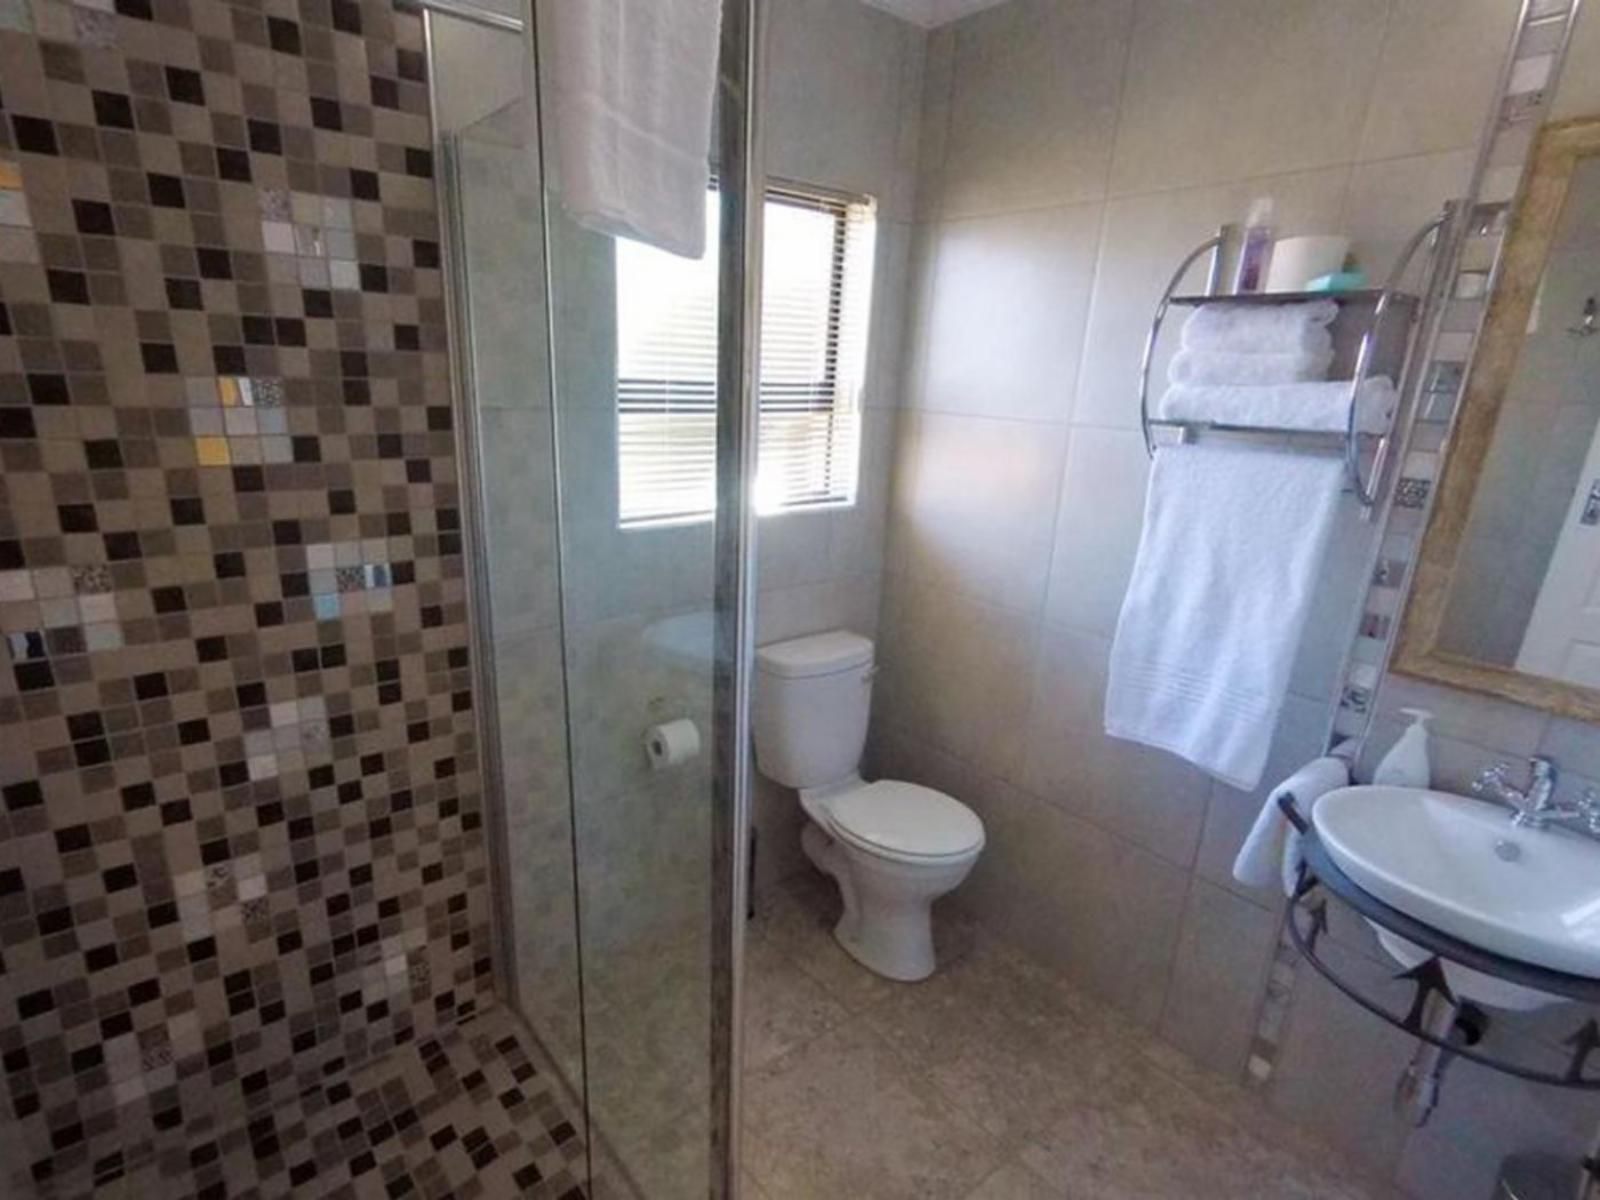 Huis Van Seisoene Wilkoppies Klerksdorp North West Province South Africa Bathroom